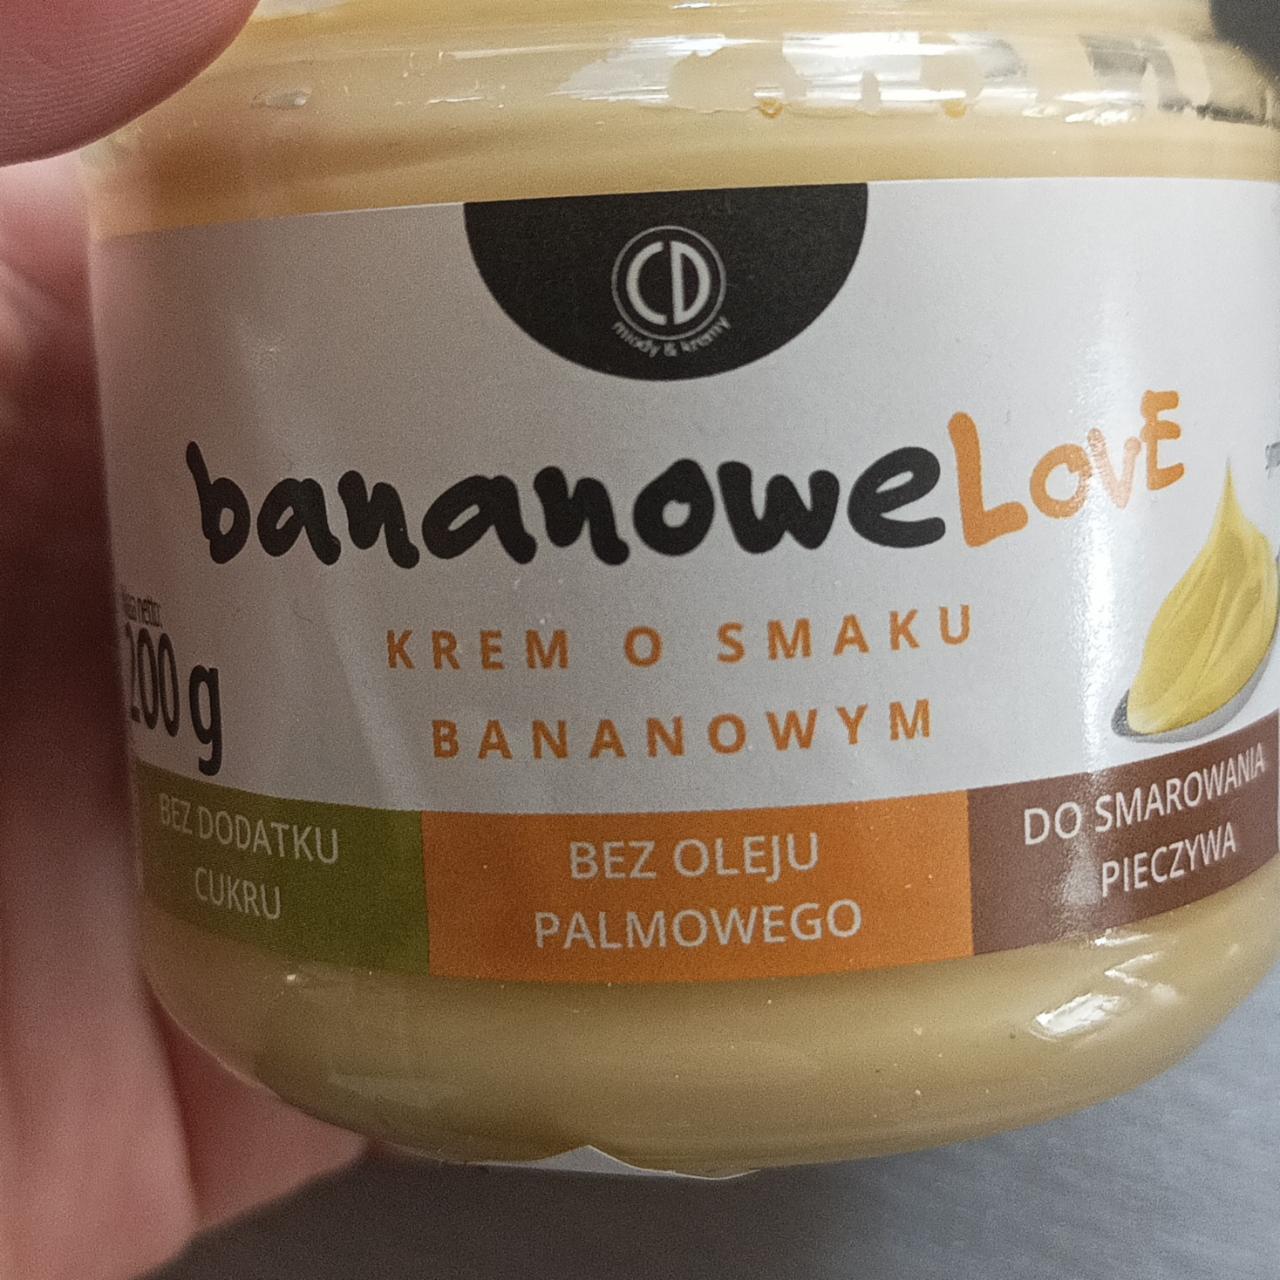 Fotografie - BananoweLove krem o smaku bananowym bez dodatku cukru CD